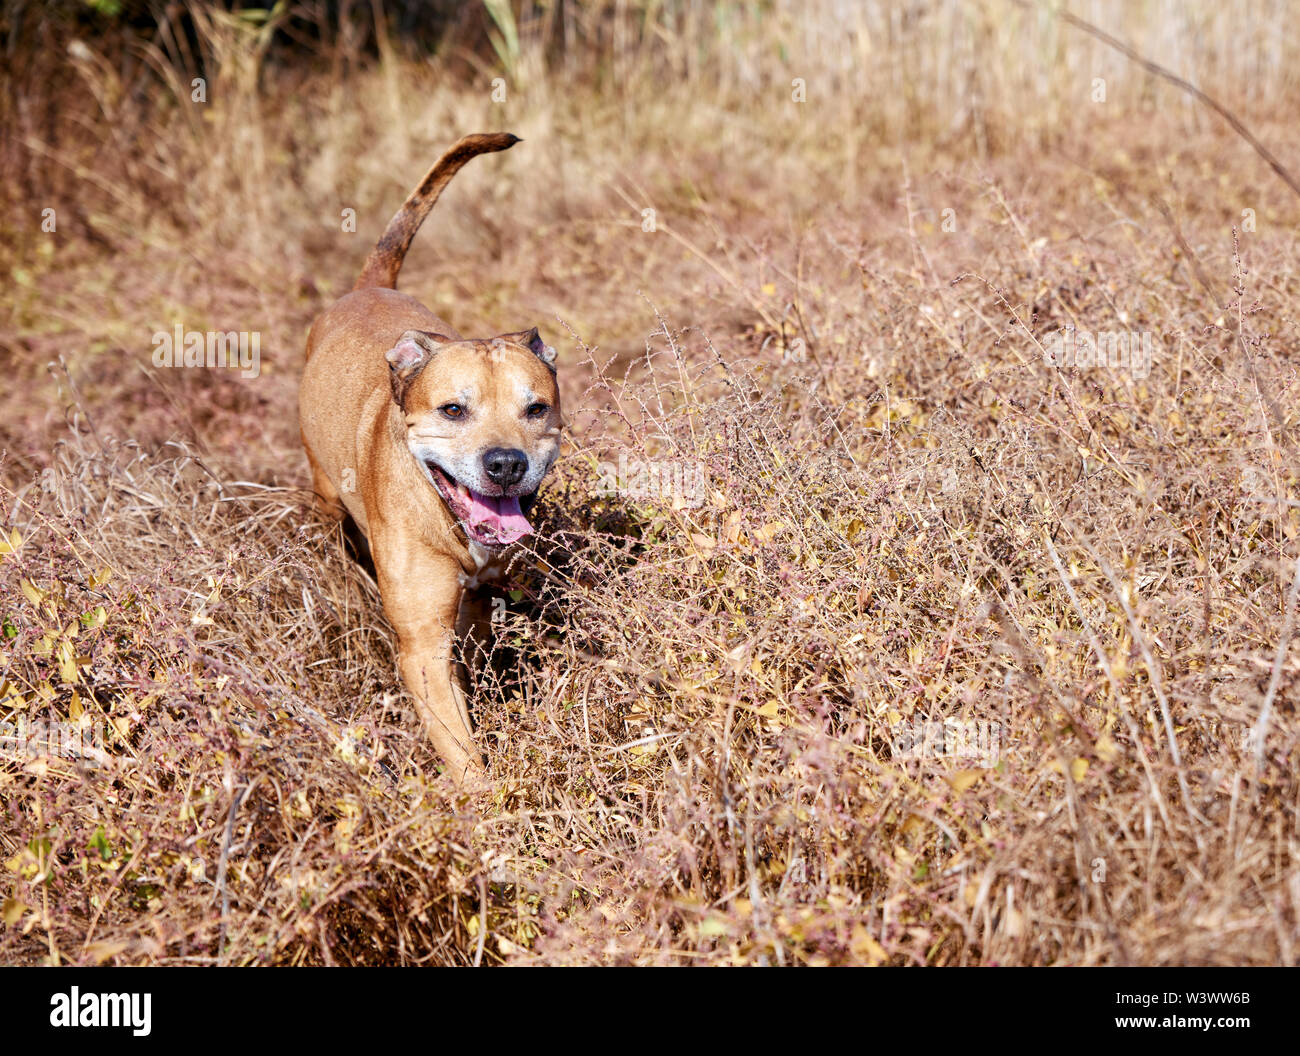 American pit-bulls rouge marche sur la nature, le chien a collé dehors sa langue et fonctionne grâce à l'amusement de l'herbe sèche Banque D'Images